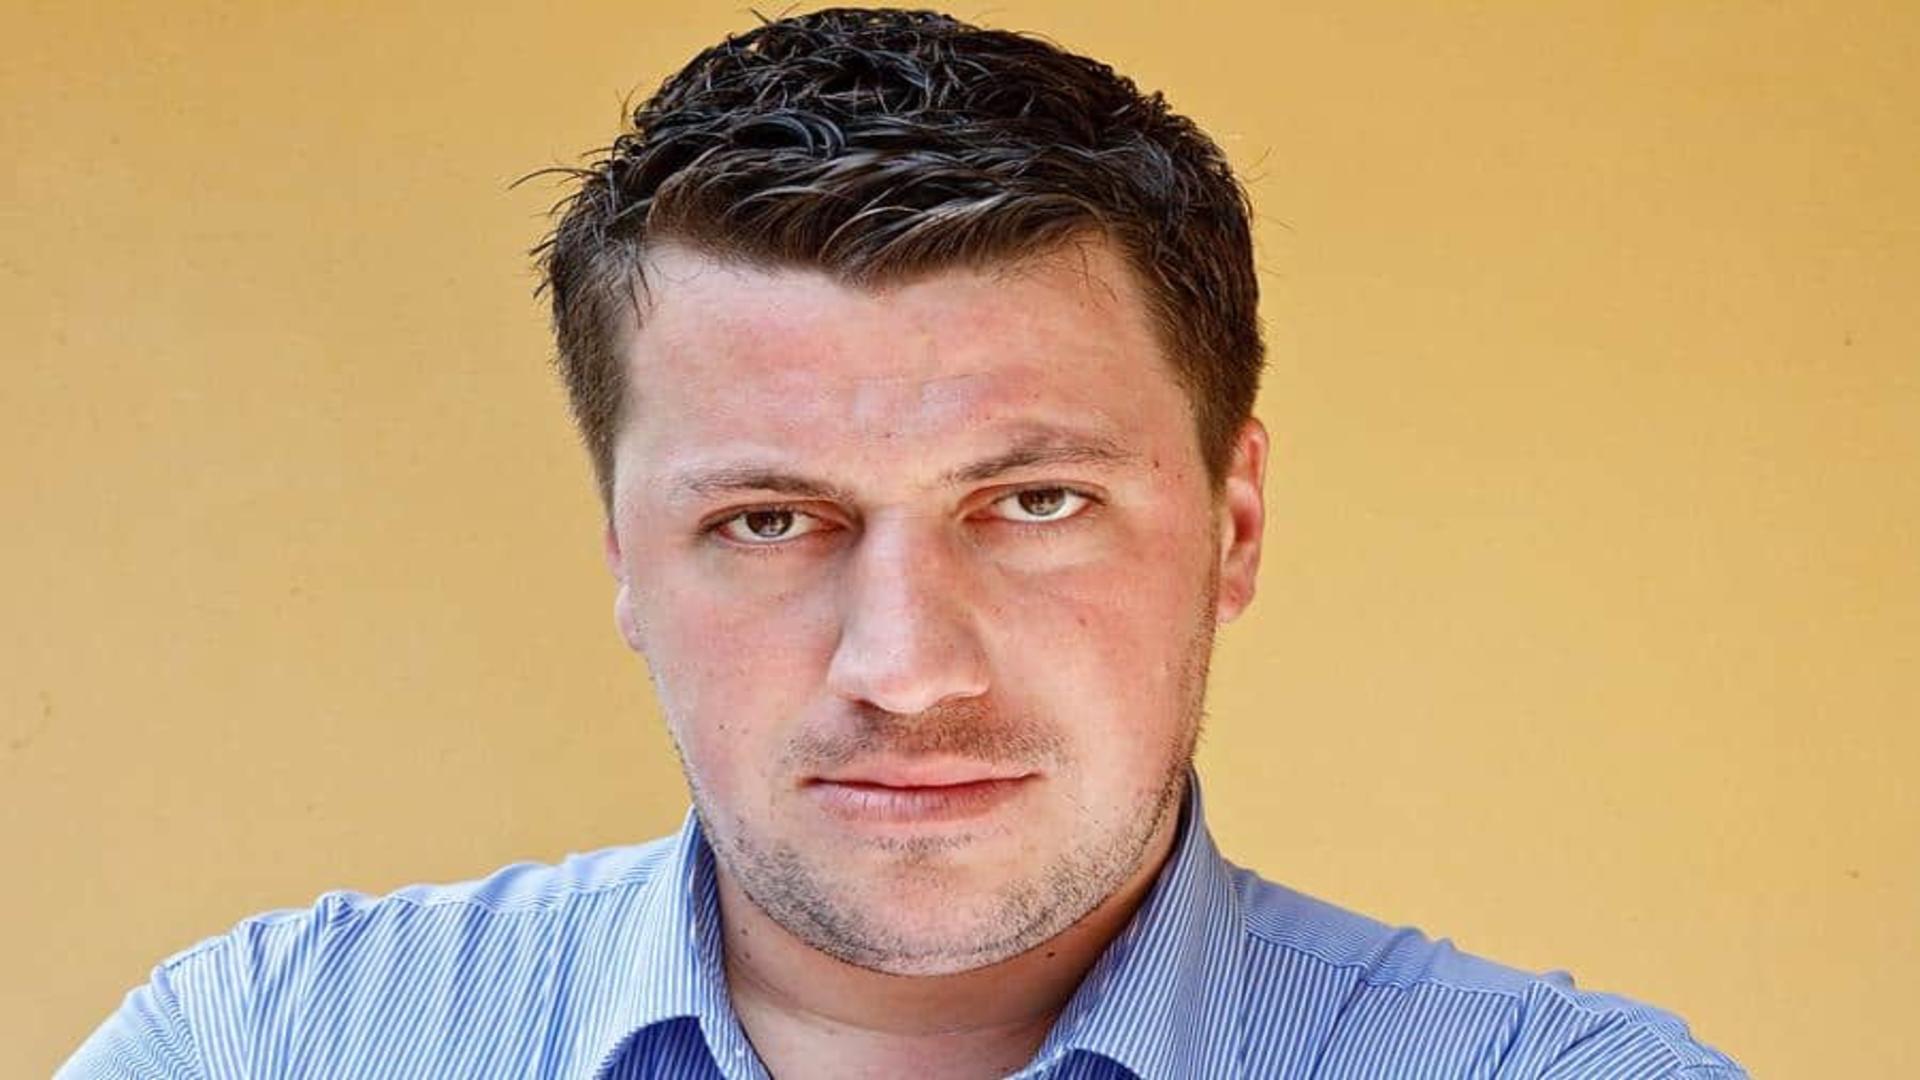 Liviu Alexa demisionează din PSD: „PSD nu a încetat să mă dezamăgească, promovând la nivel central securici ca Dâncu, reprimind în partid trădători precum Tudose, Grindeanu sau Neacșu, evitând orice reforme reale”